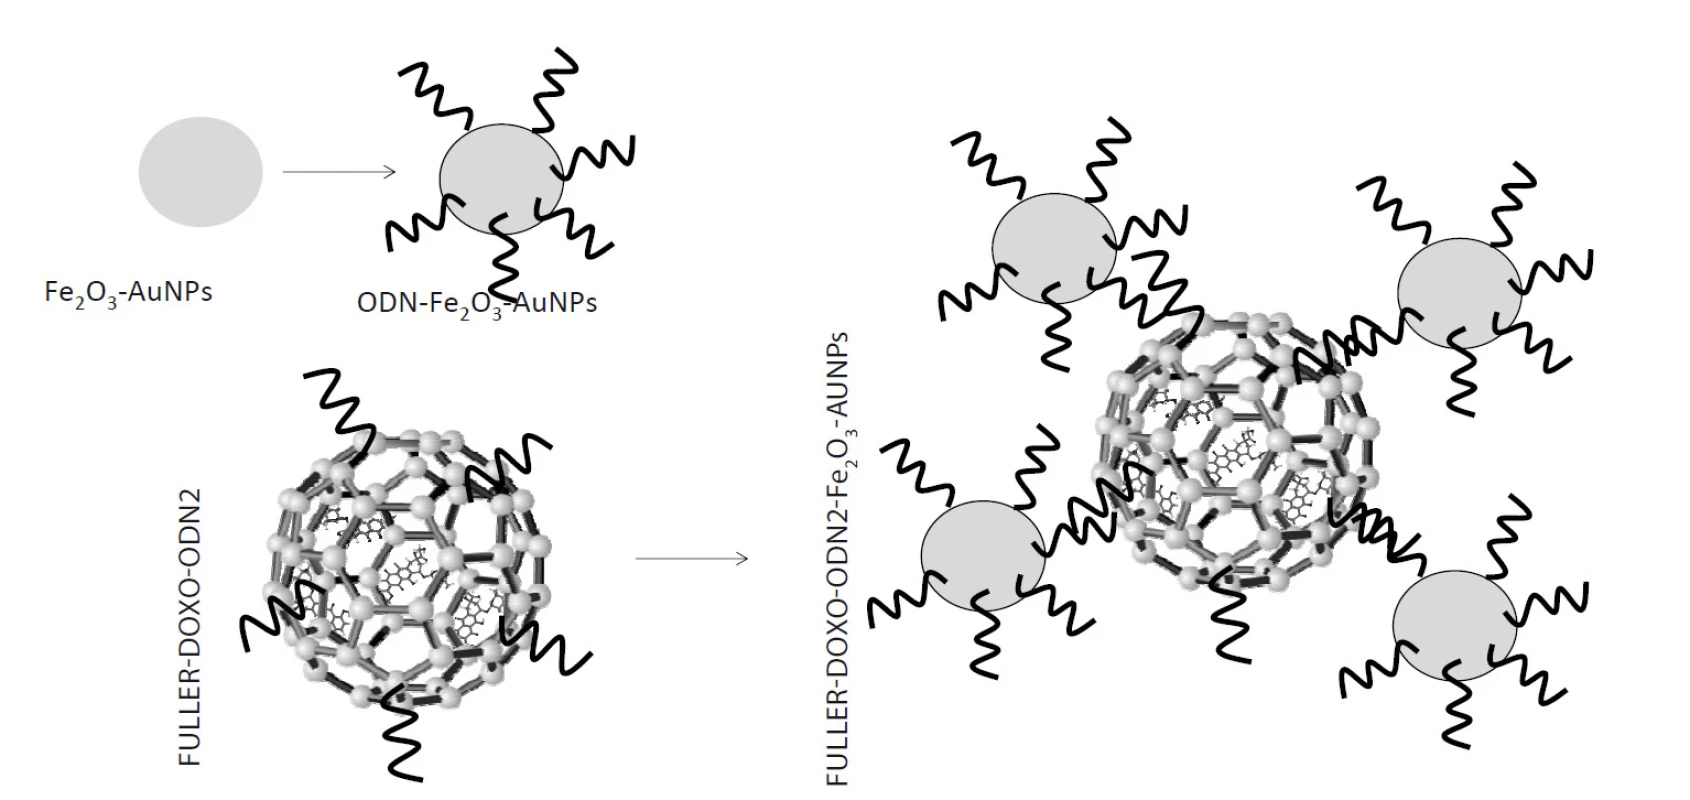 Předpokládané schéma interakce DOXO s fullerenem za vytvoření komplexu FULLER-DOXO. Následně byl tento komplex modifikován ODN2 za vytvoření komplexu FULLER-DOXO-ODN2.